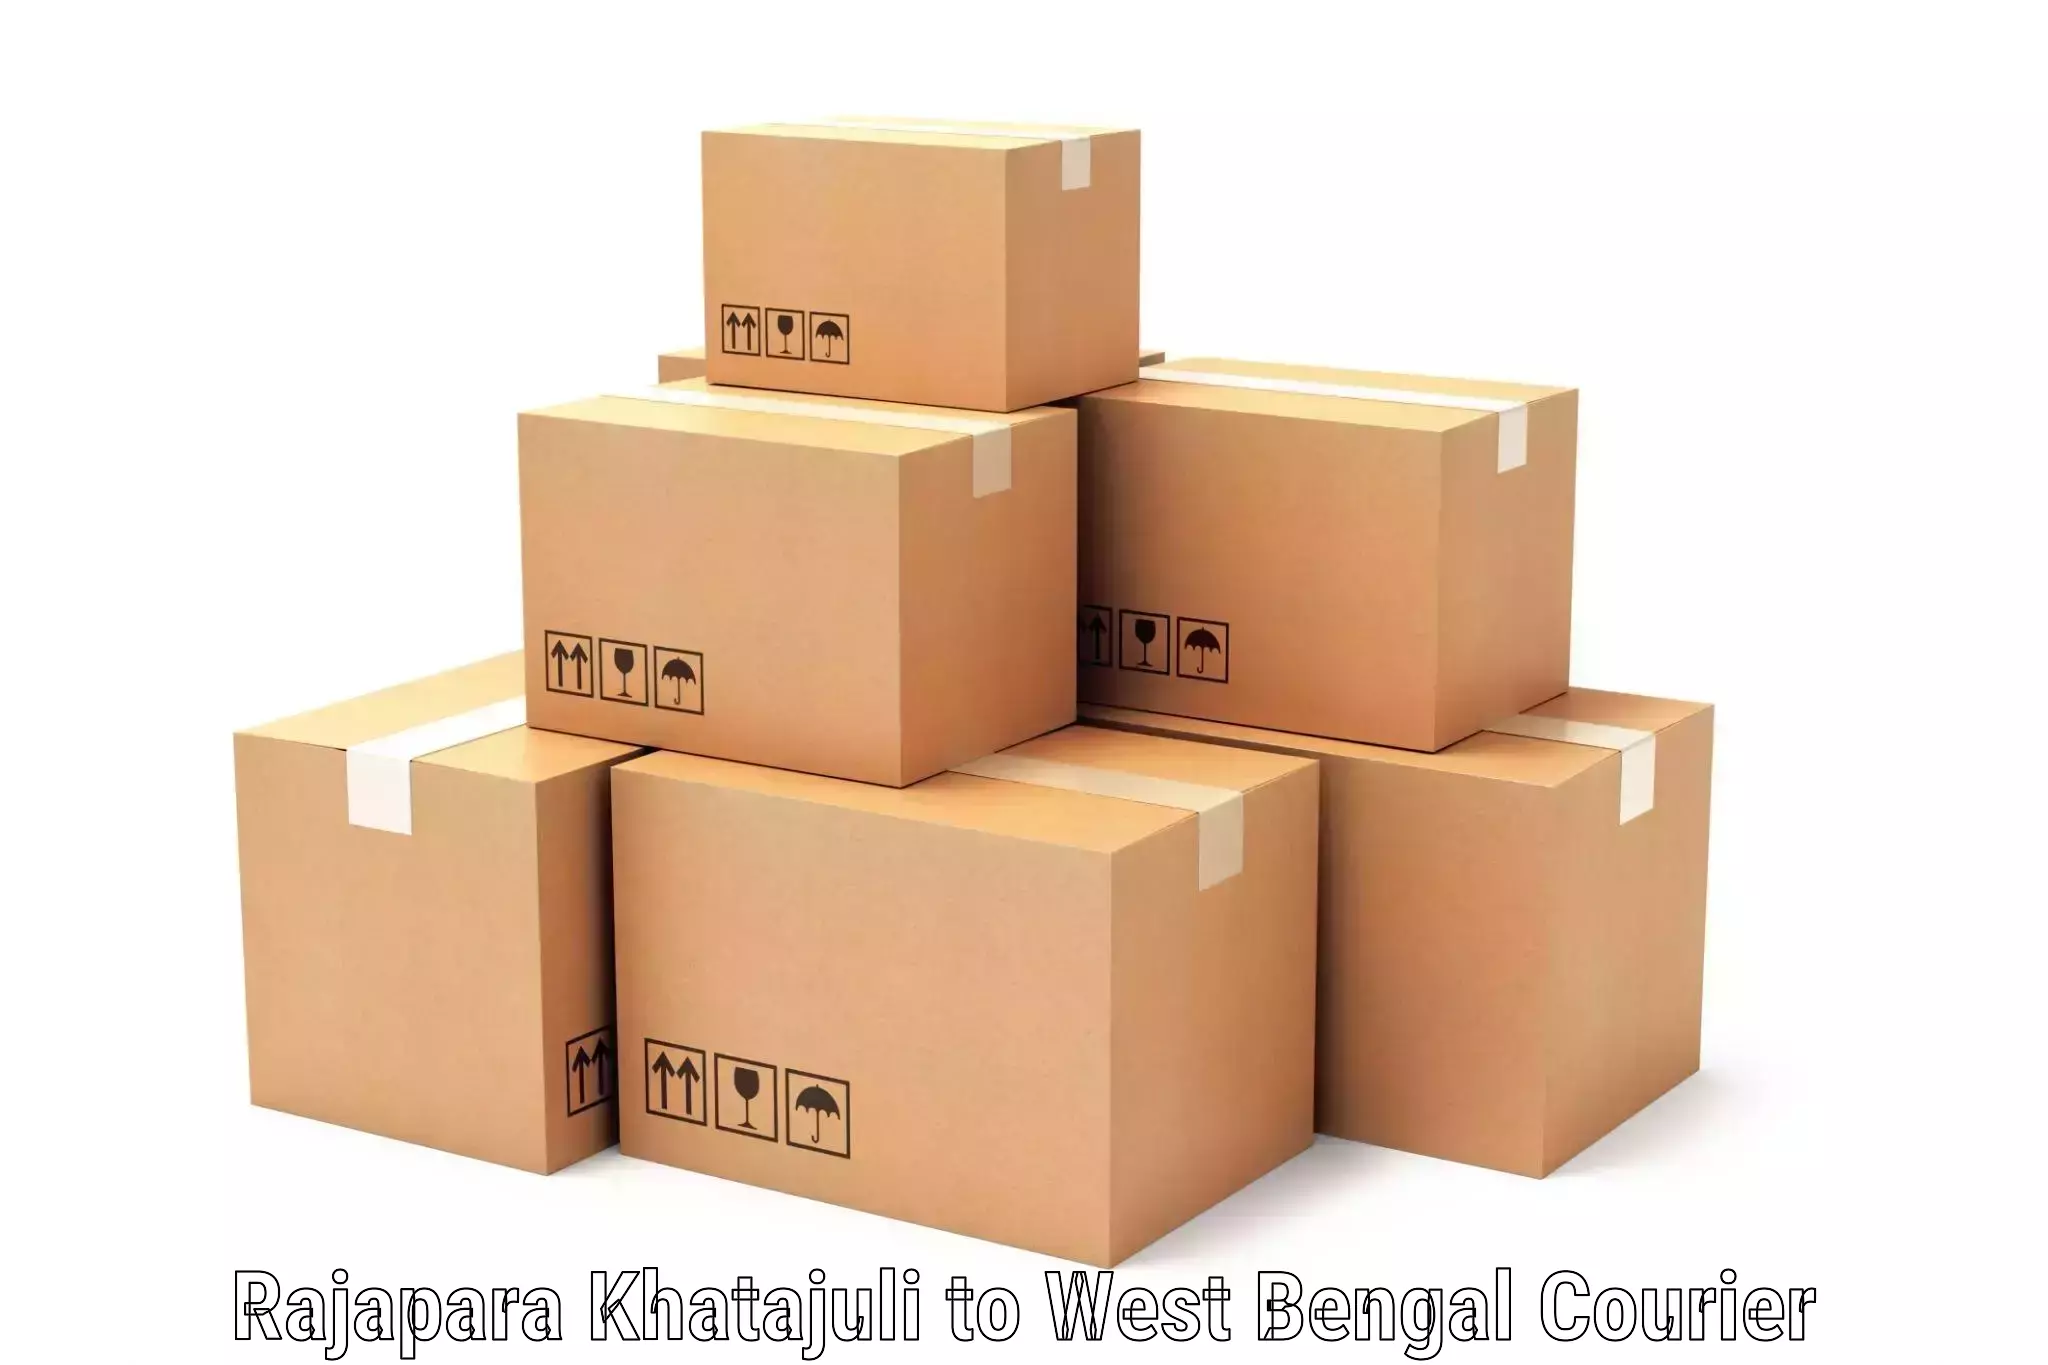 Customizable shipping options in Rajapara Khatajuli to Kolkata